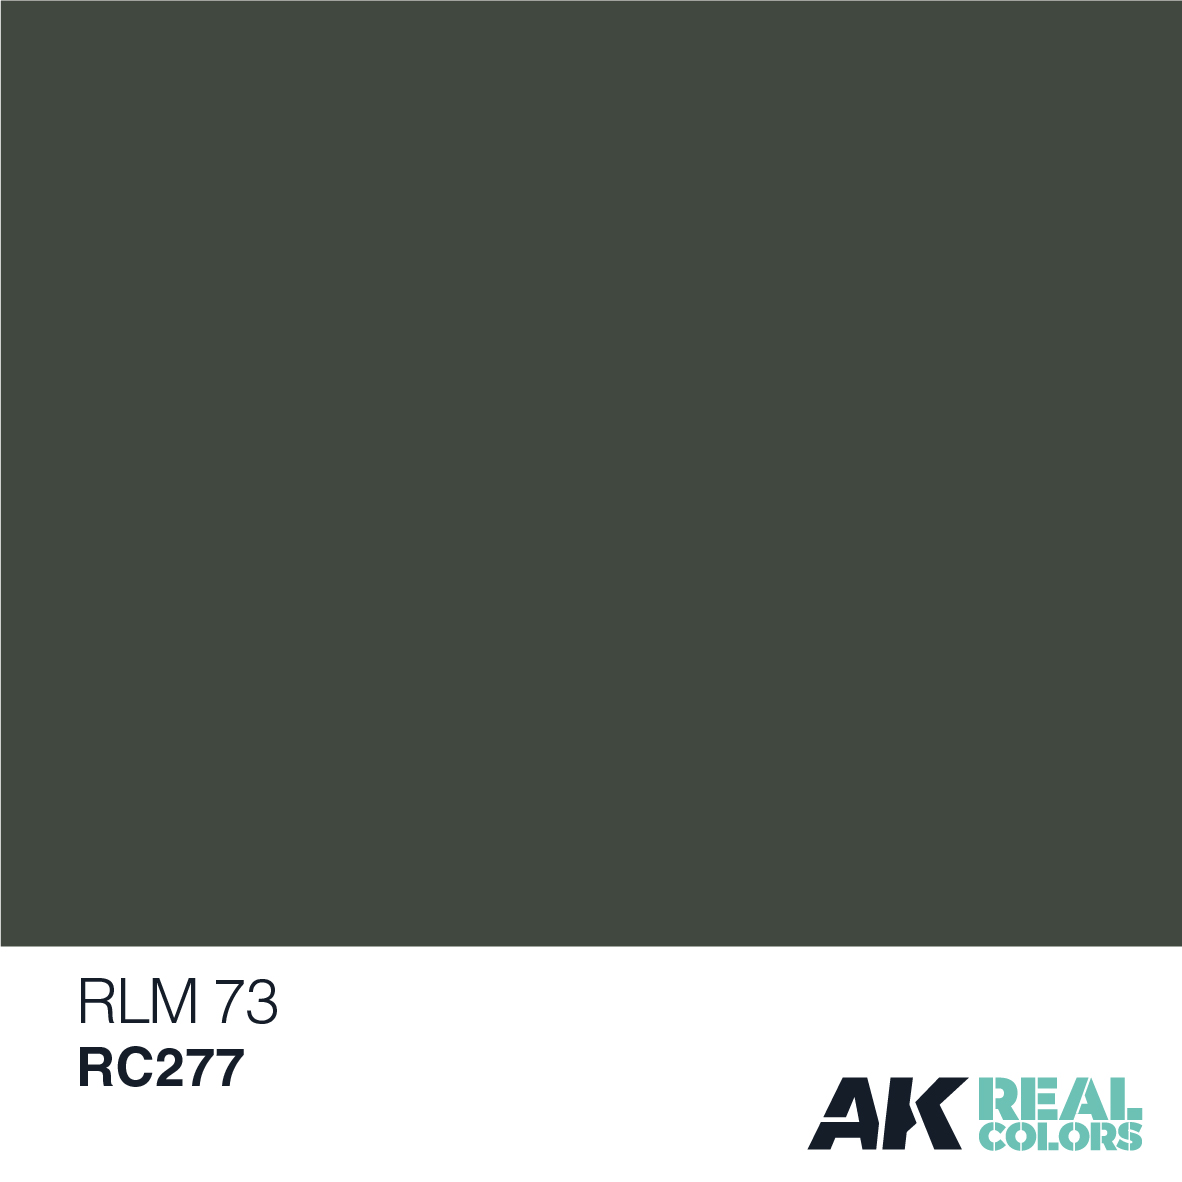 RLM 73